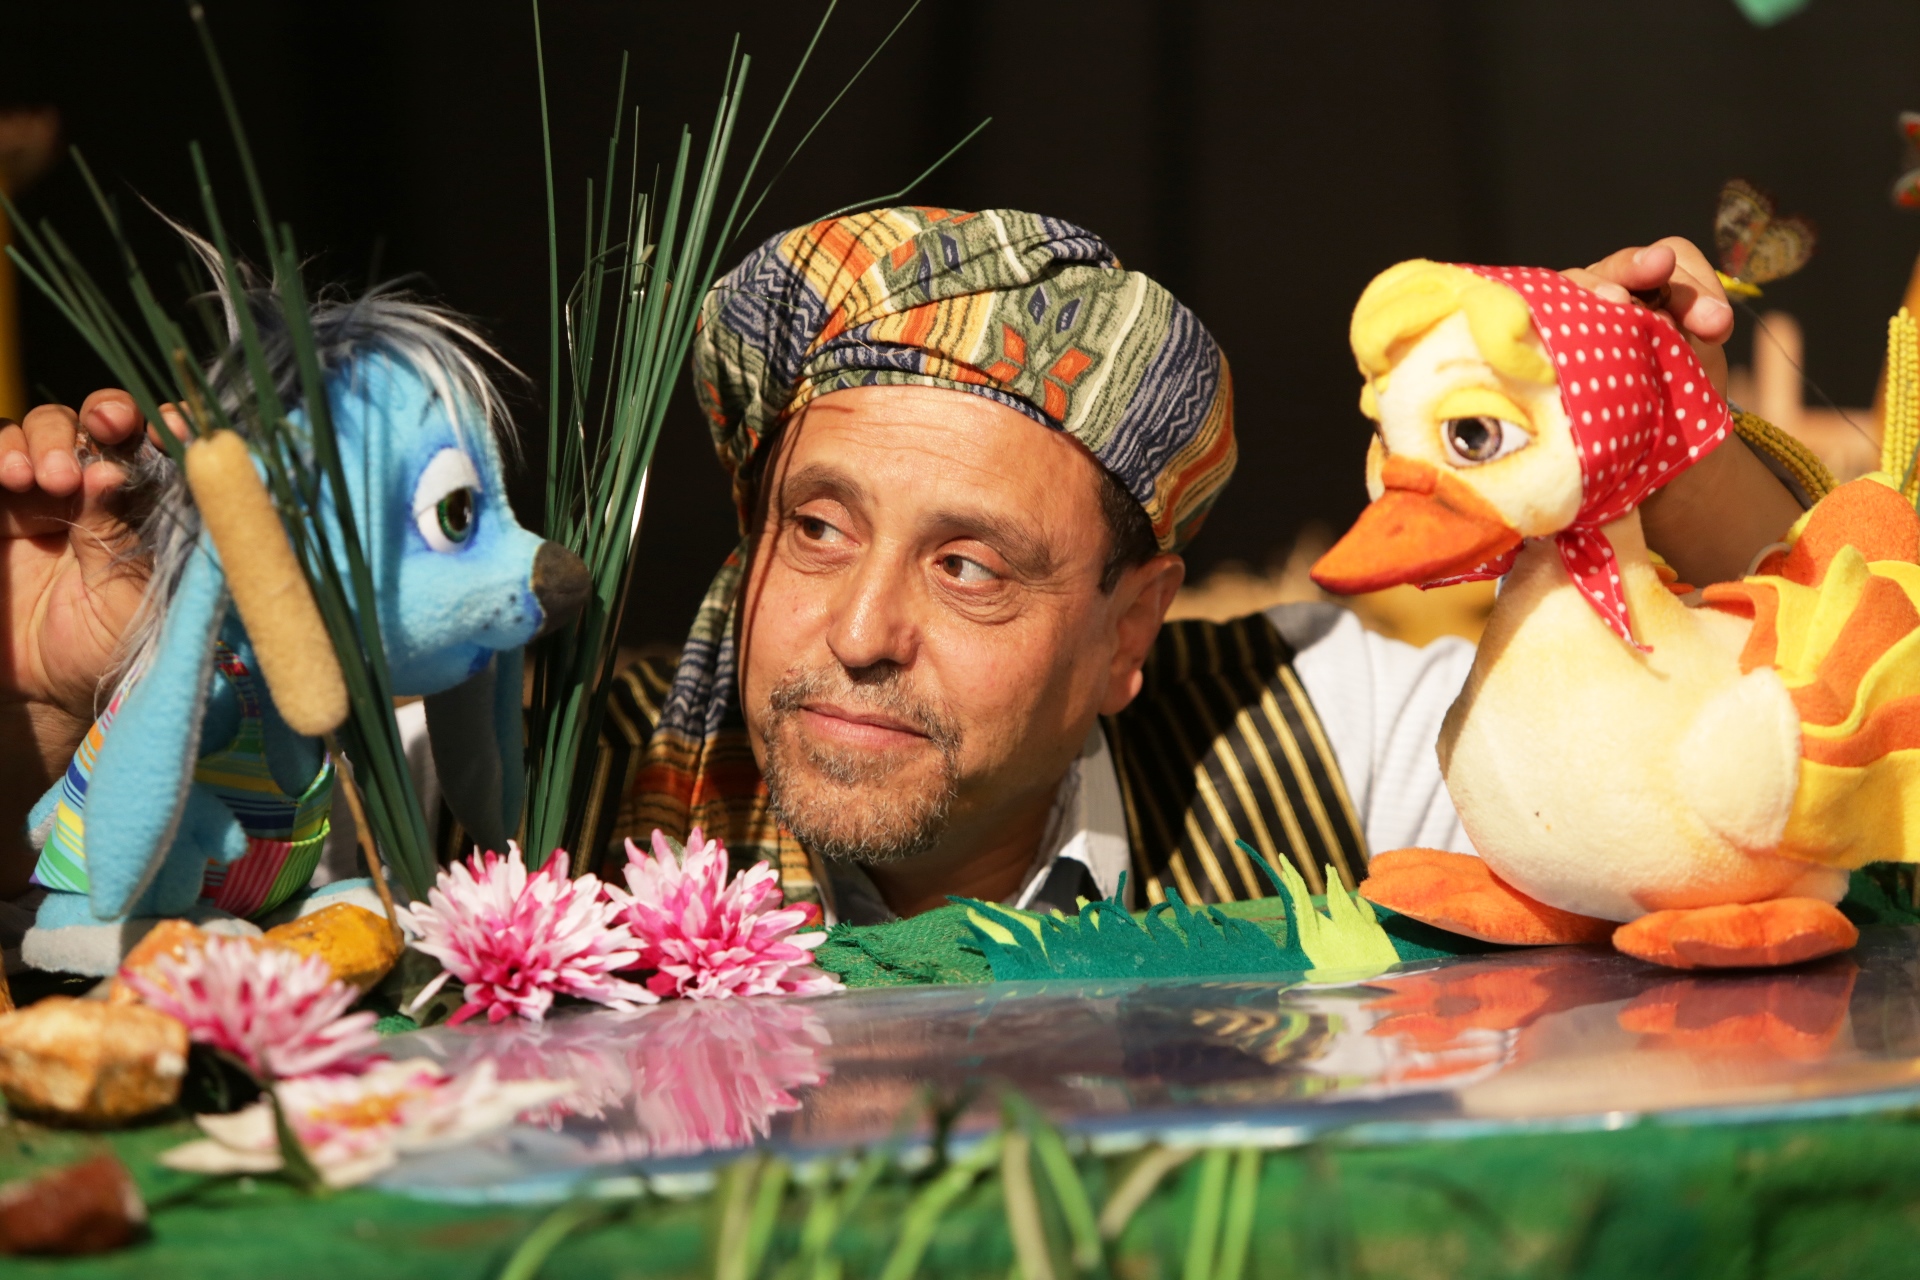 Международный фестиваль кукольных театров в Иерусалиме в этом году отмечает свое 25-летие.